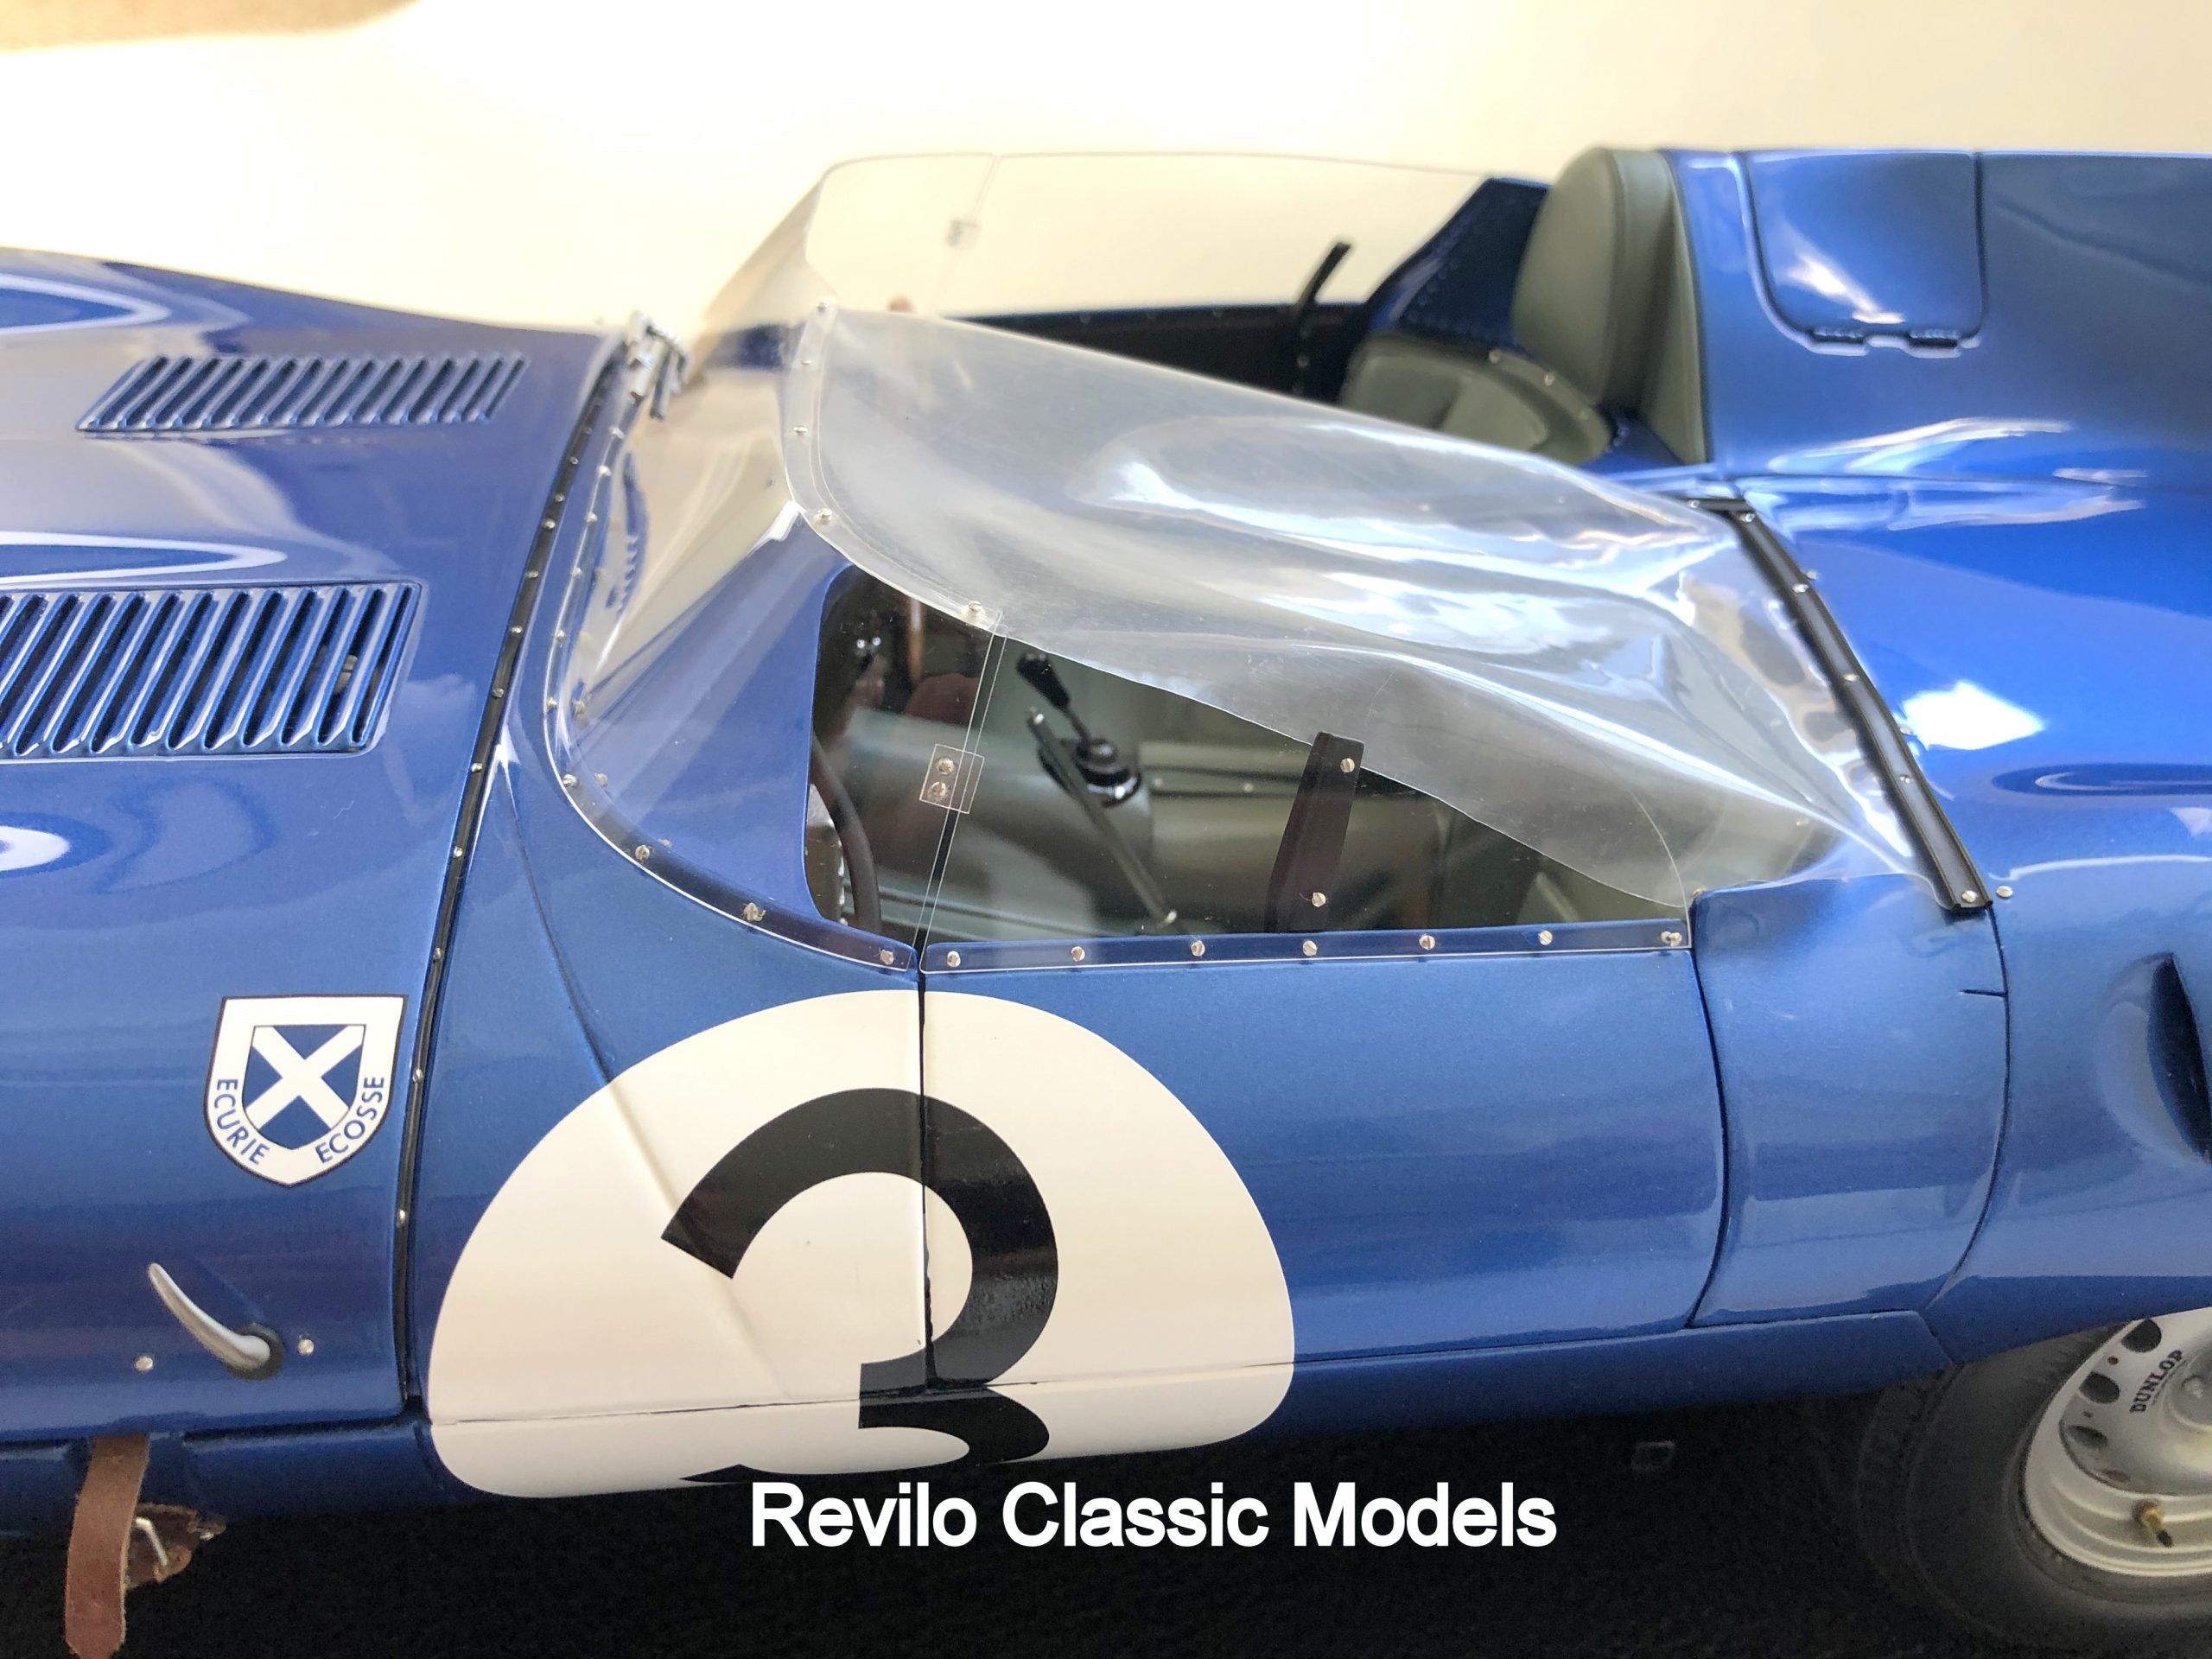 Amalgama Jaguar D Type escala 1:8 #3 1957 ganador de Le Mans